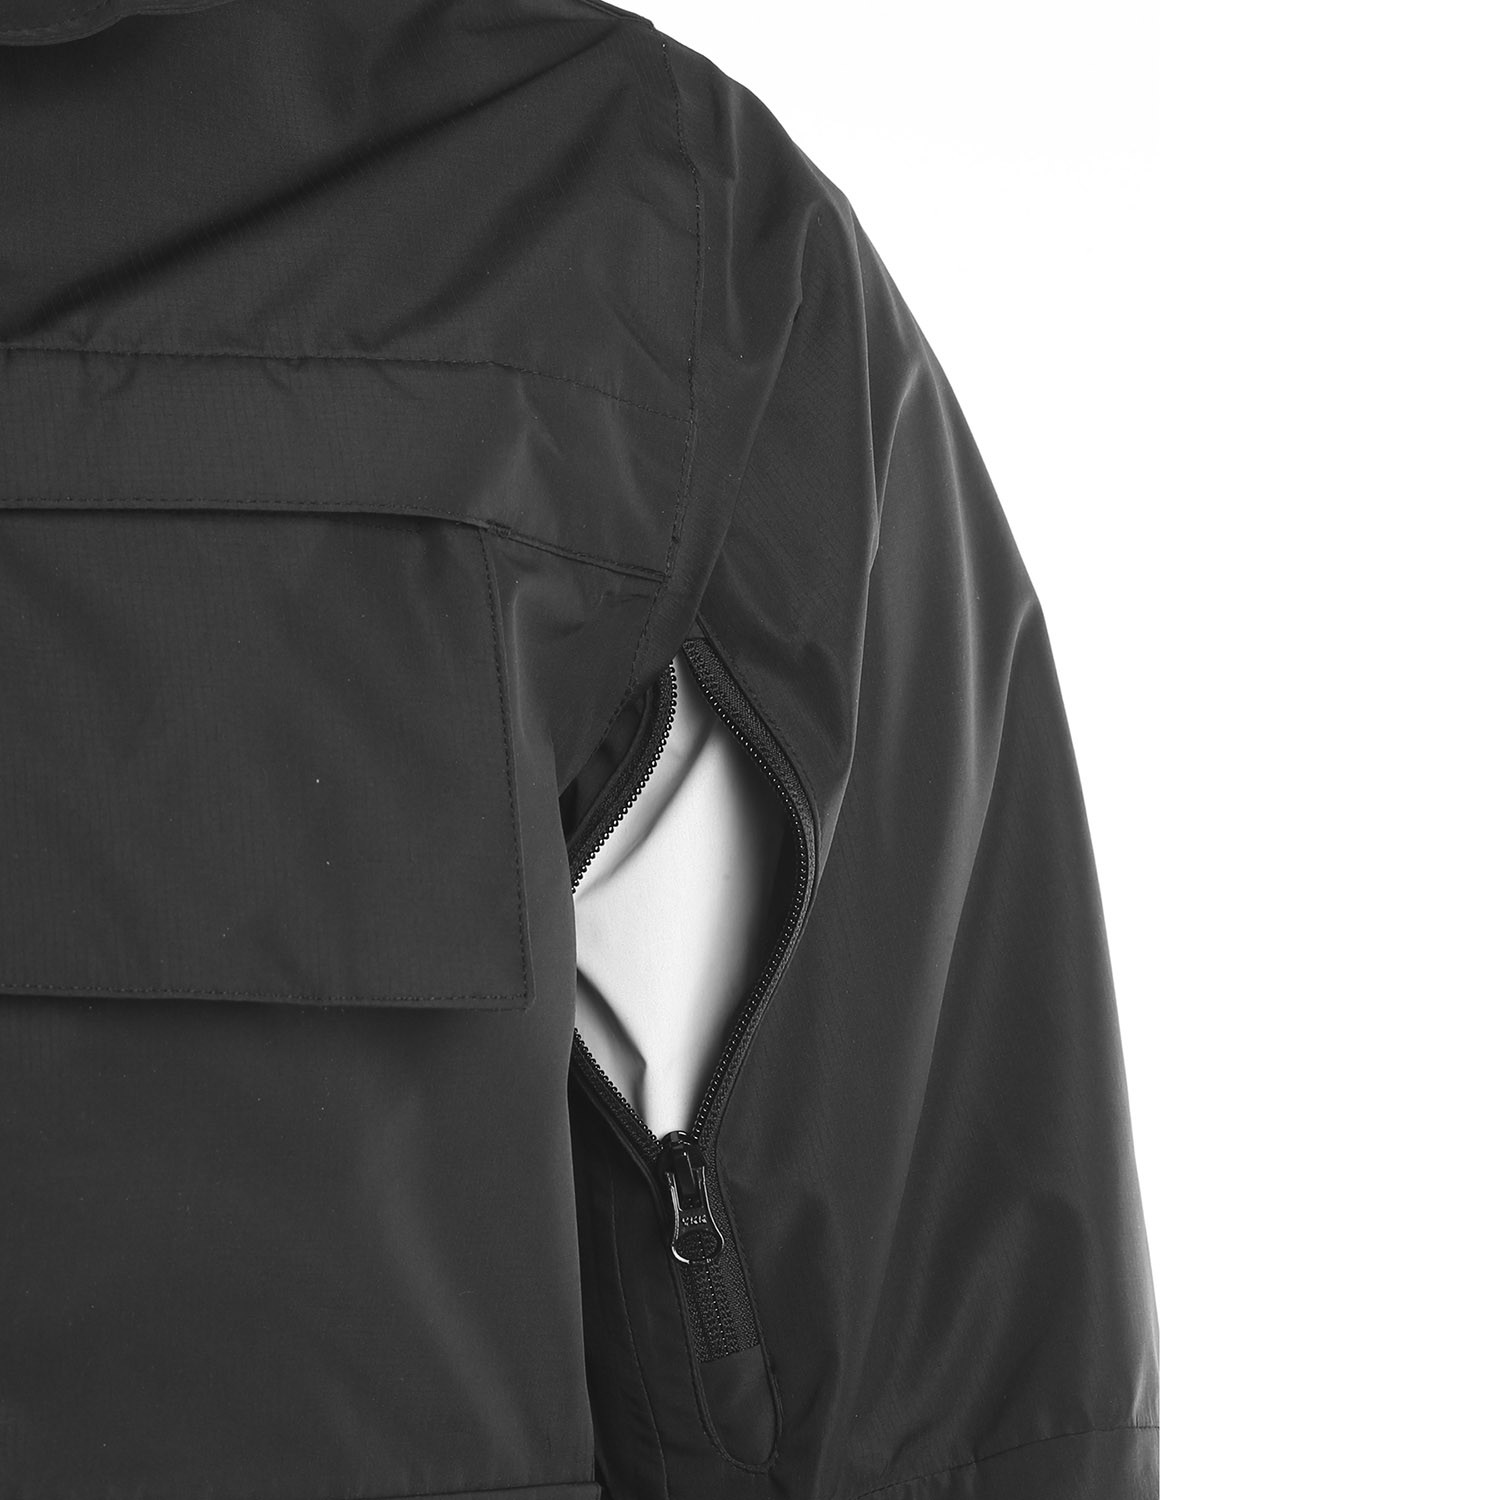 Elbeco Shield Duty Jacket - Jackets - Outerwear - Non-Contract Uniforms